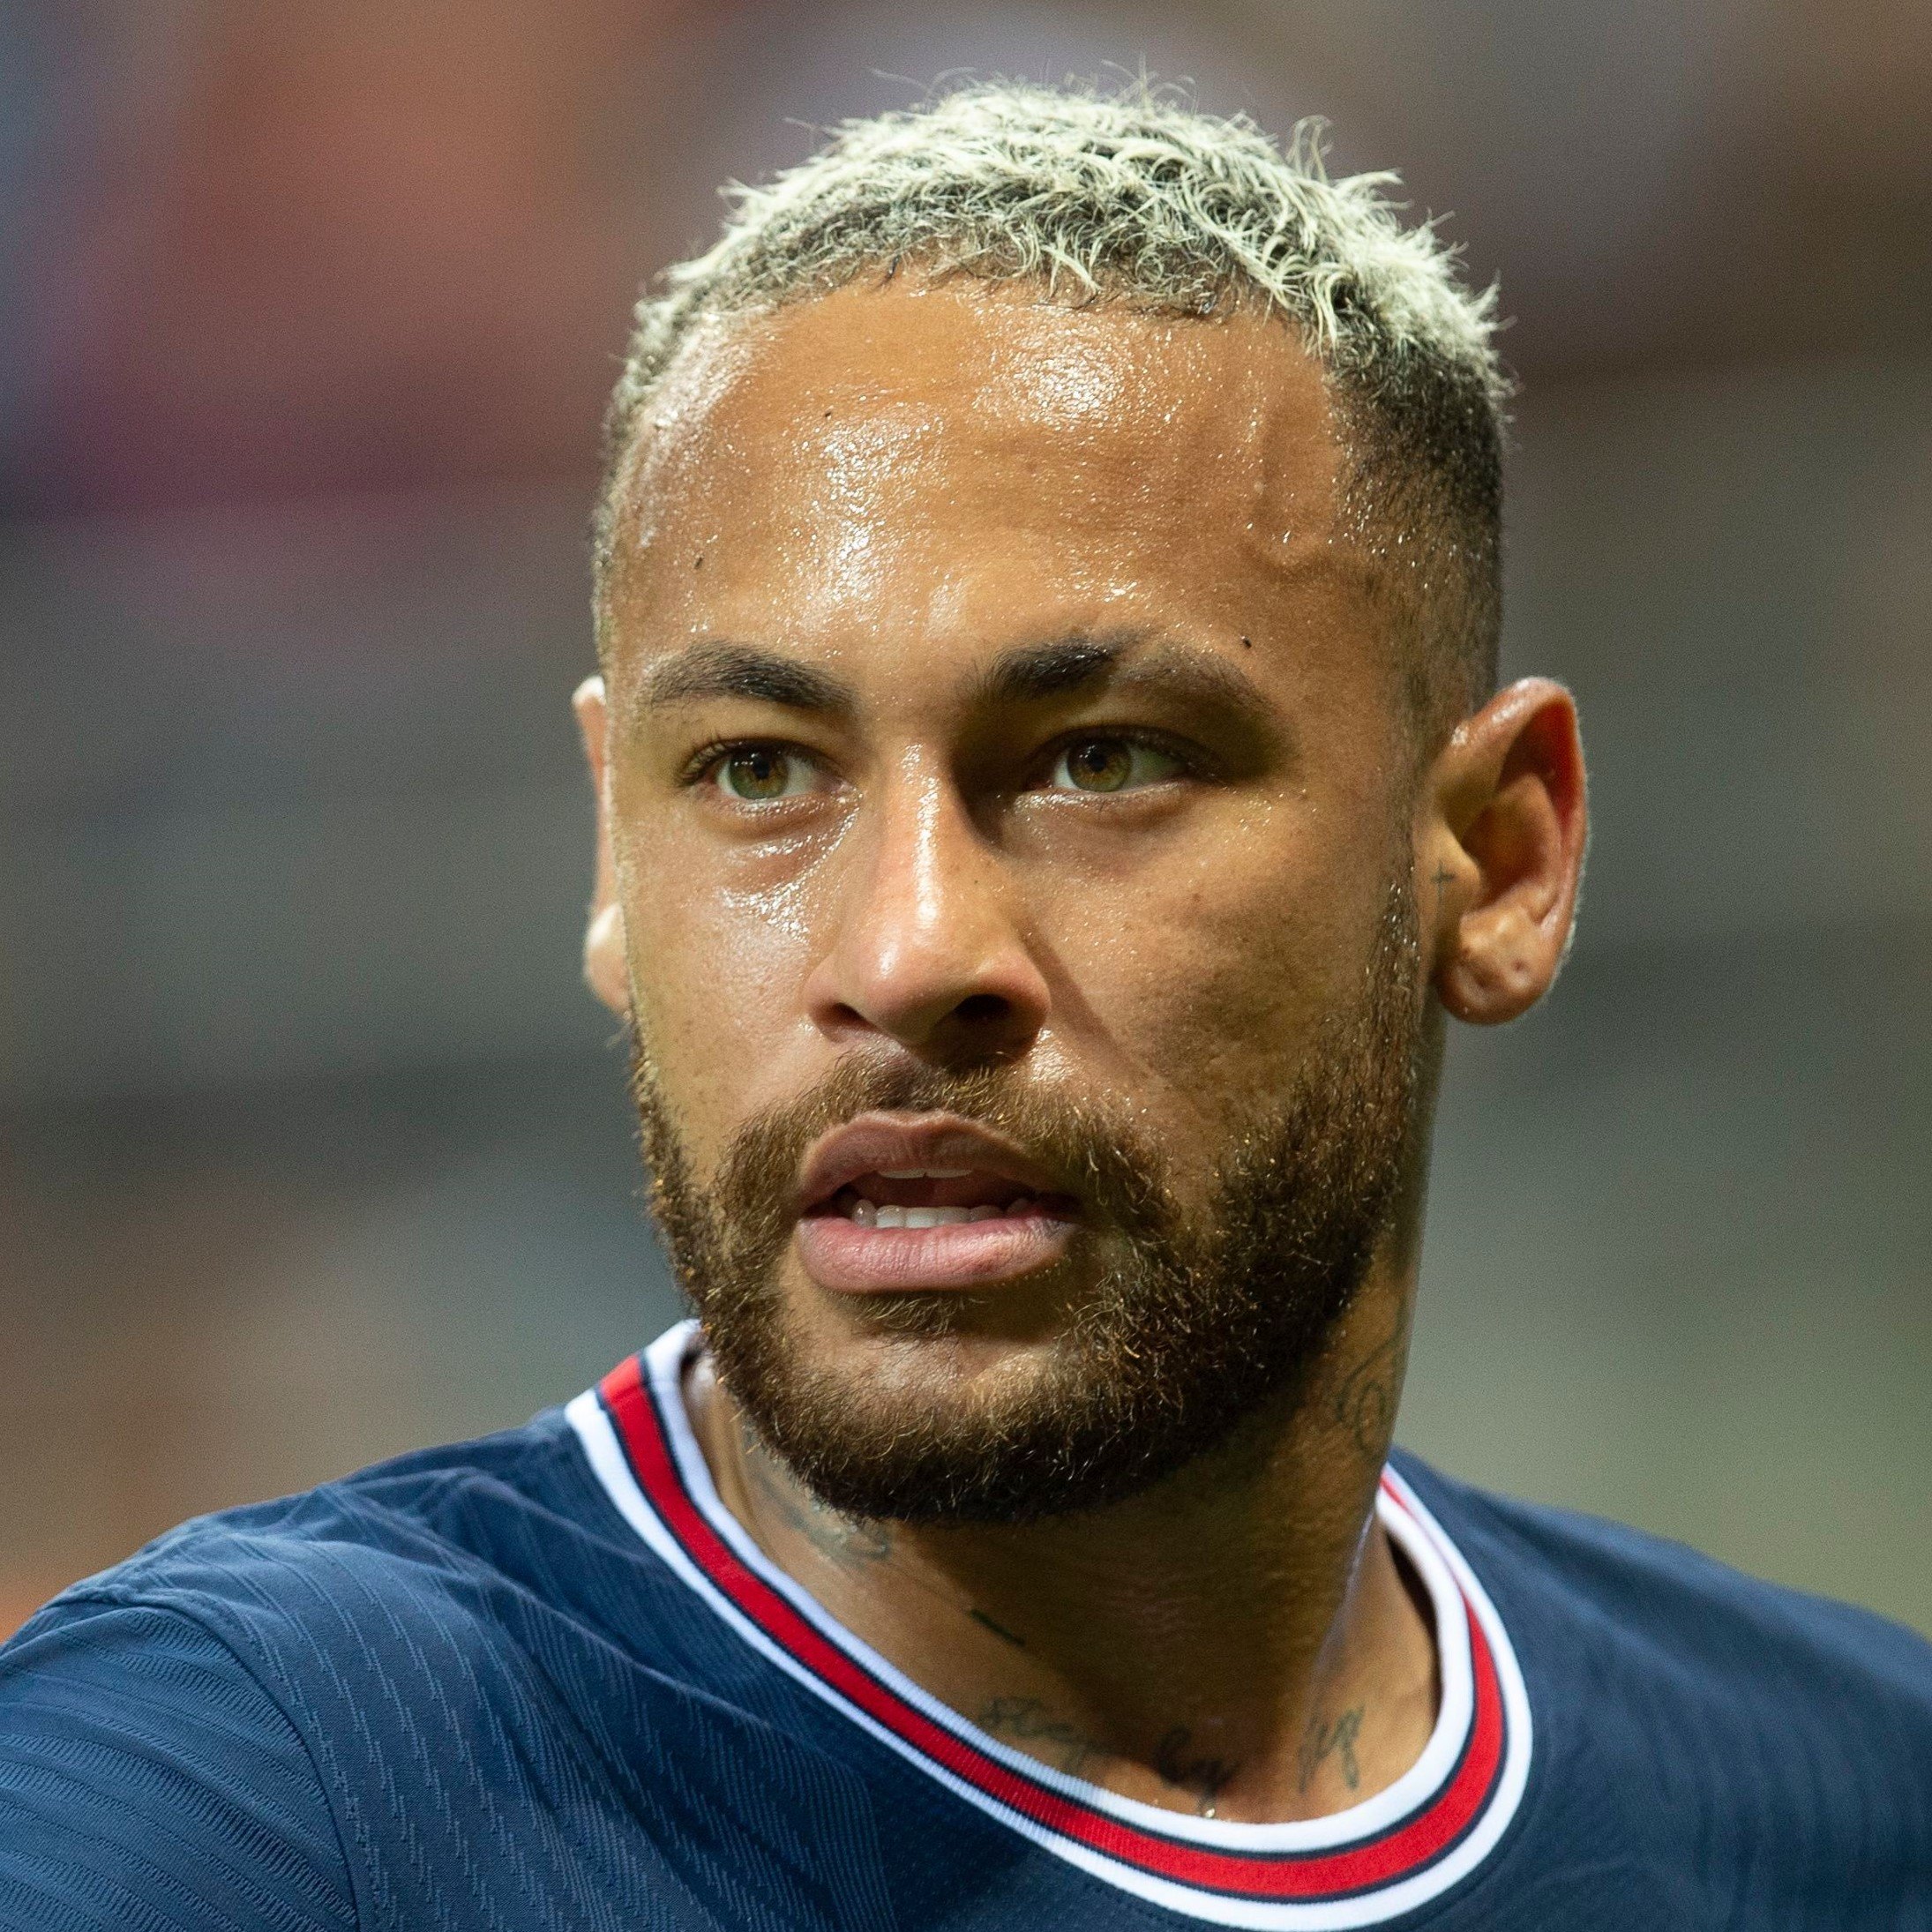 Neymar Jr lleva un corte militar con cabello decolorado